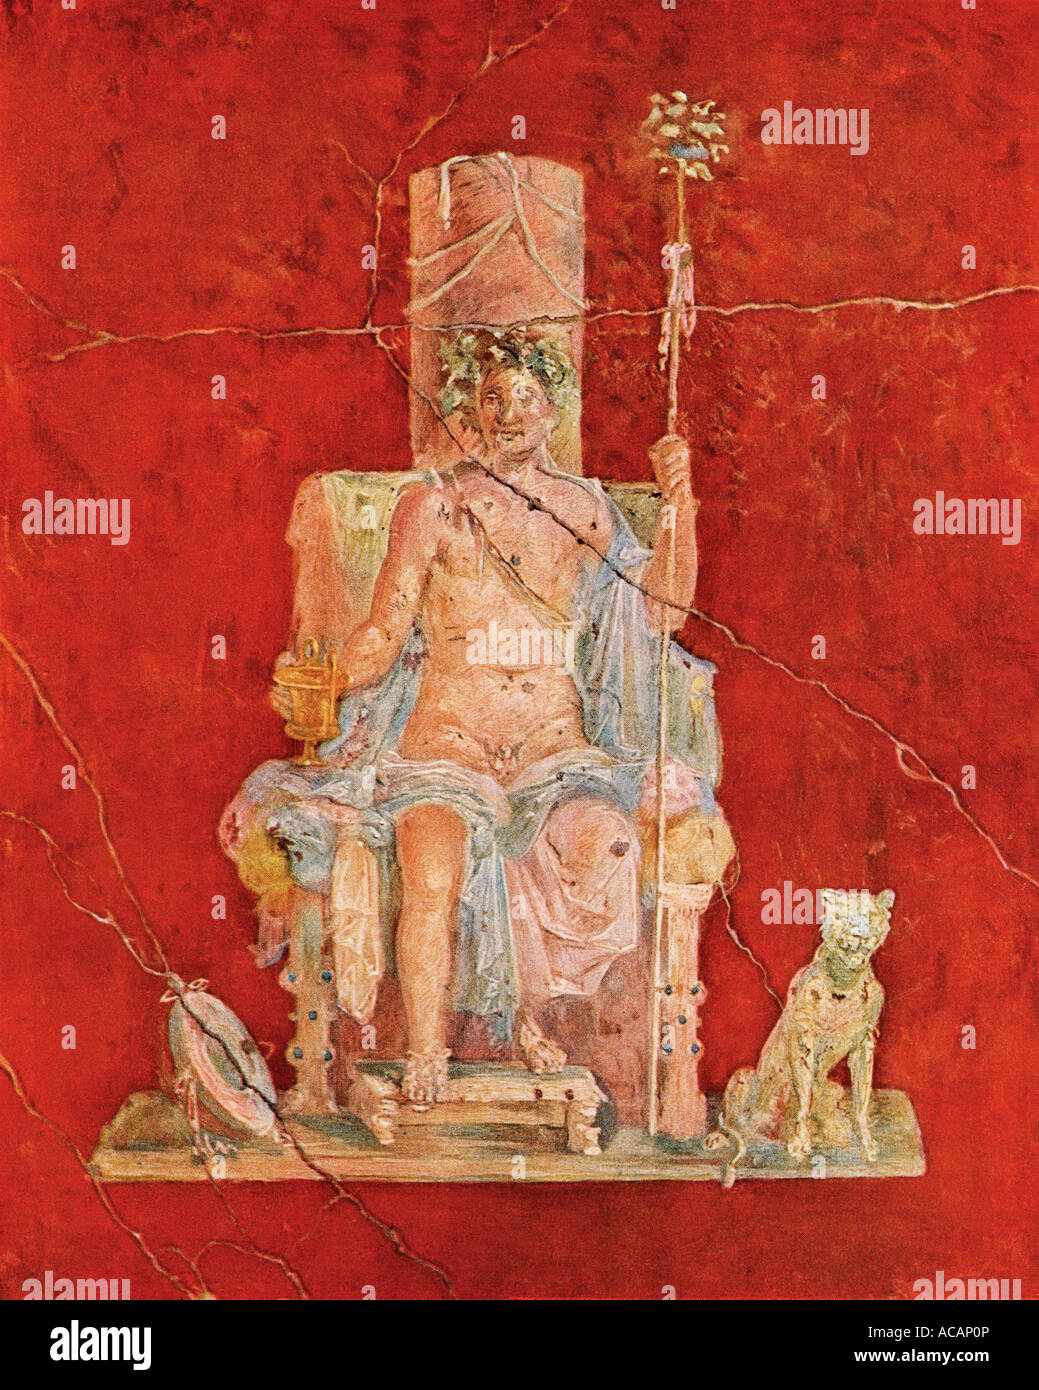 La peinture murale de la divinité Romaine intronisé de Dionysos les ruines de Pompéi. Lithographie couleur Banque D'Images